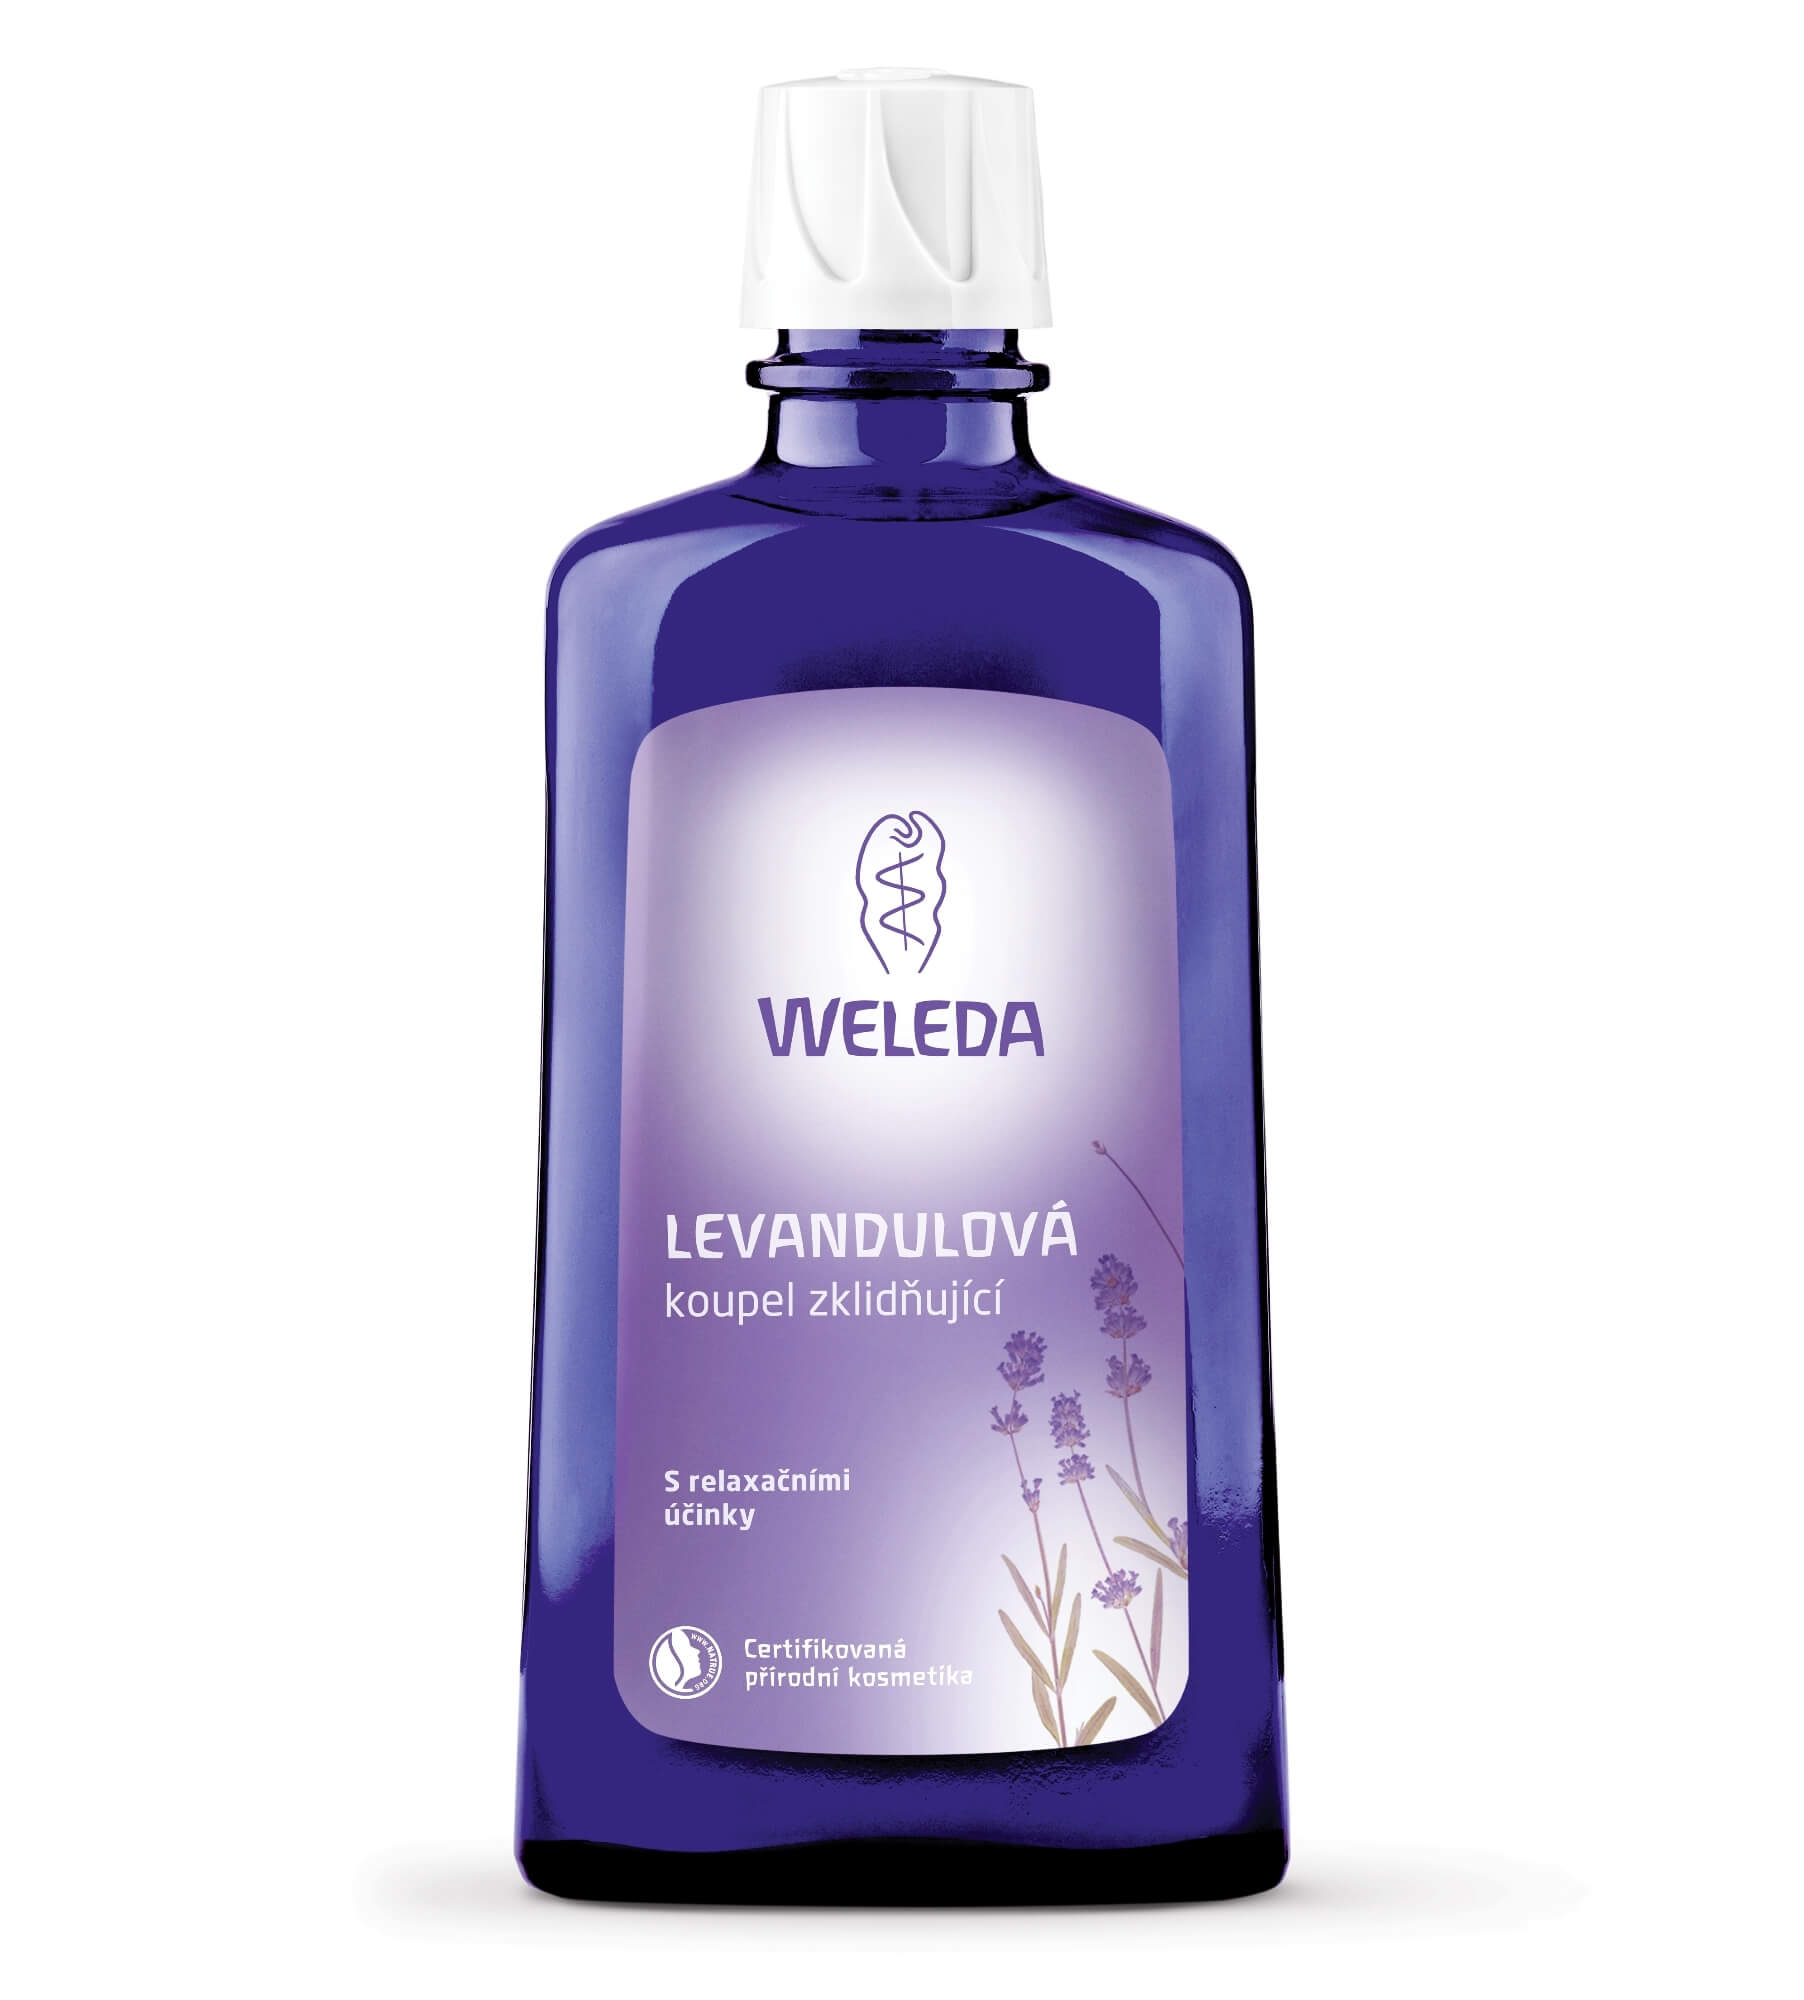 Weleda Lavender Relaxing Bath Milk 200 ml kúpeľový olej pre ženy